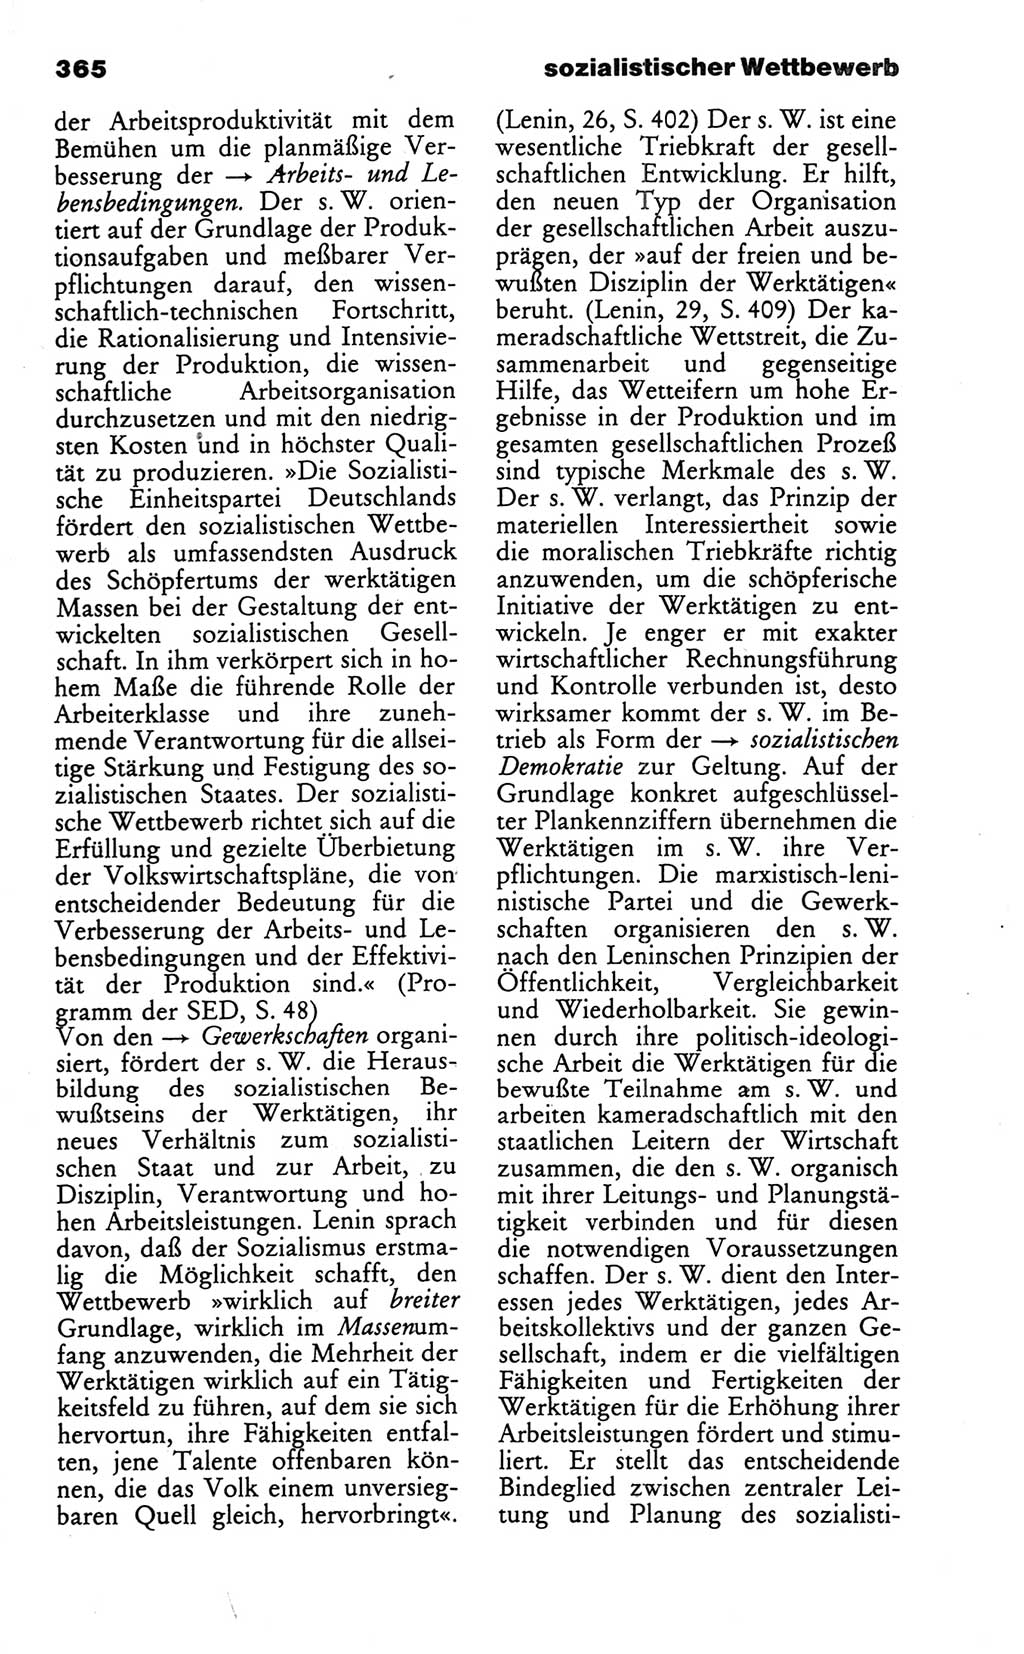 Wörterbuch des wissenschaftlichen Kommunismus [Deutsche Demokratische Republik (DDR)] 1986, Seite 365 (Wb. wiss. Komm. DDR 1986, S. 365)